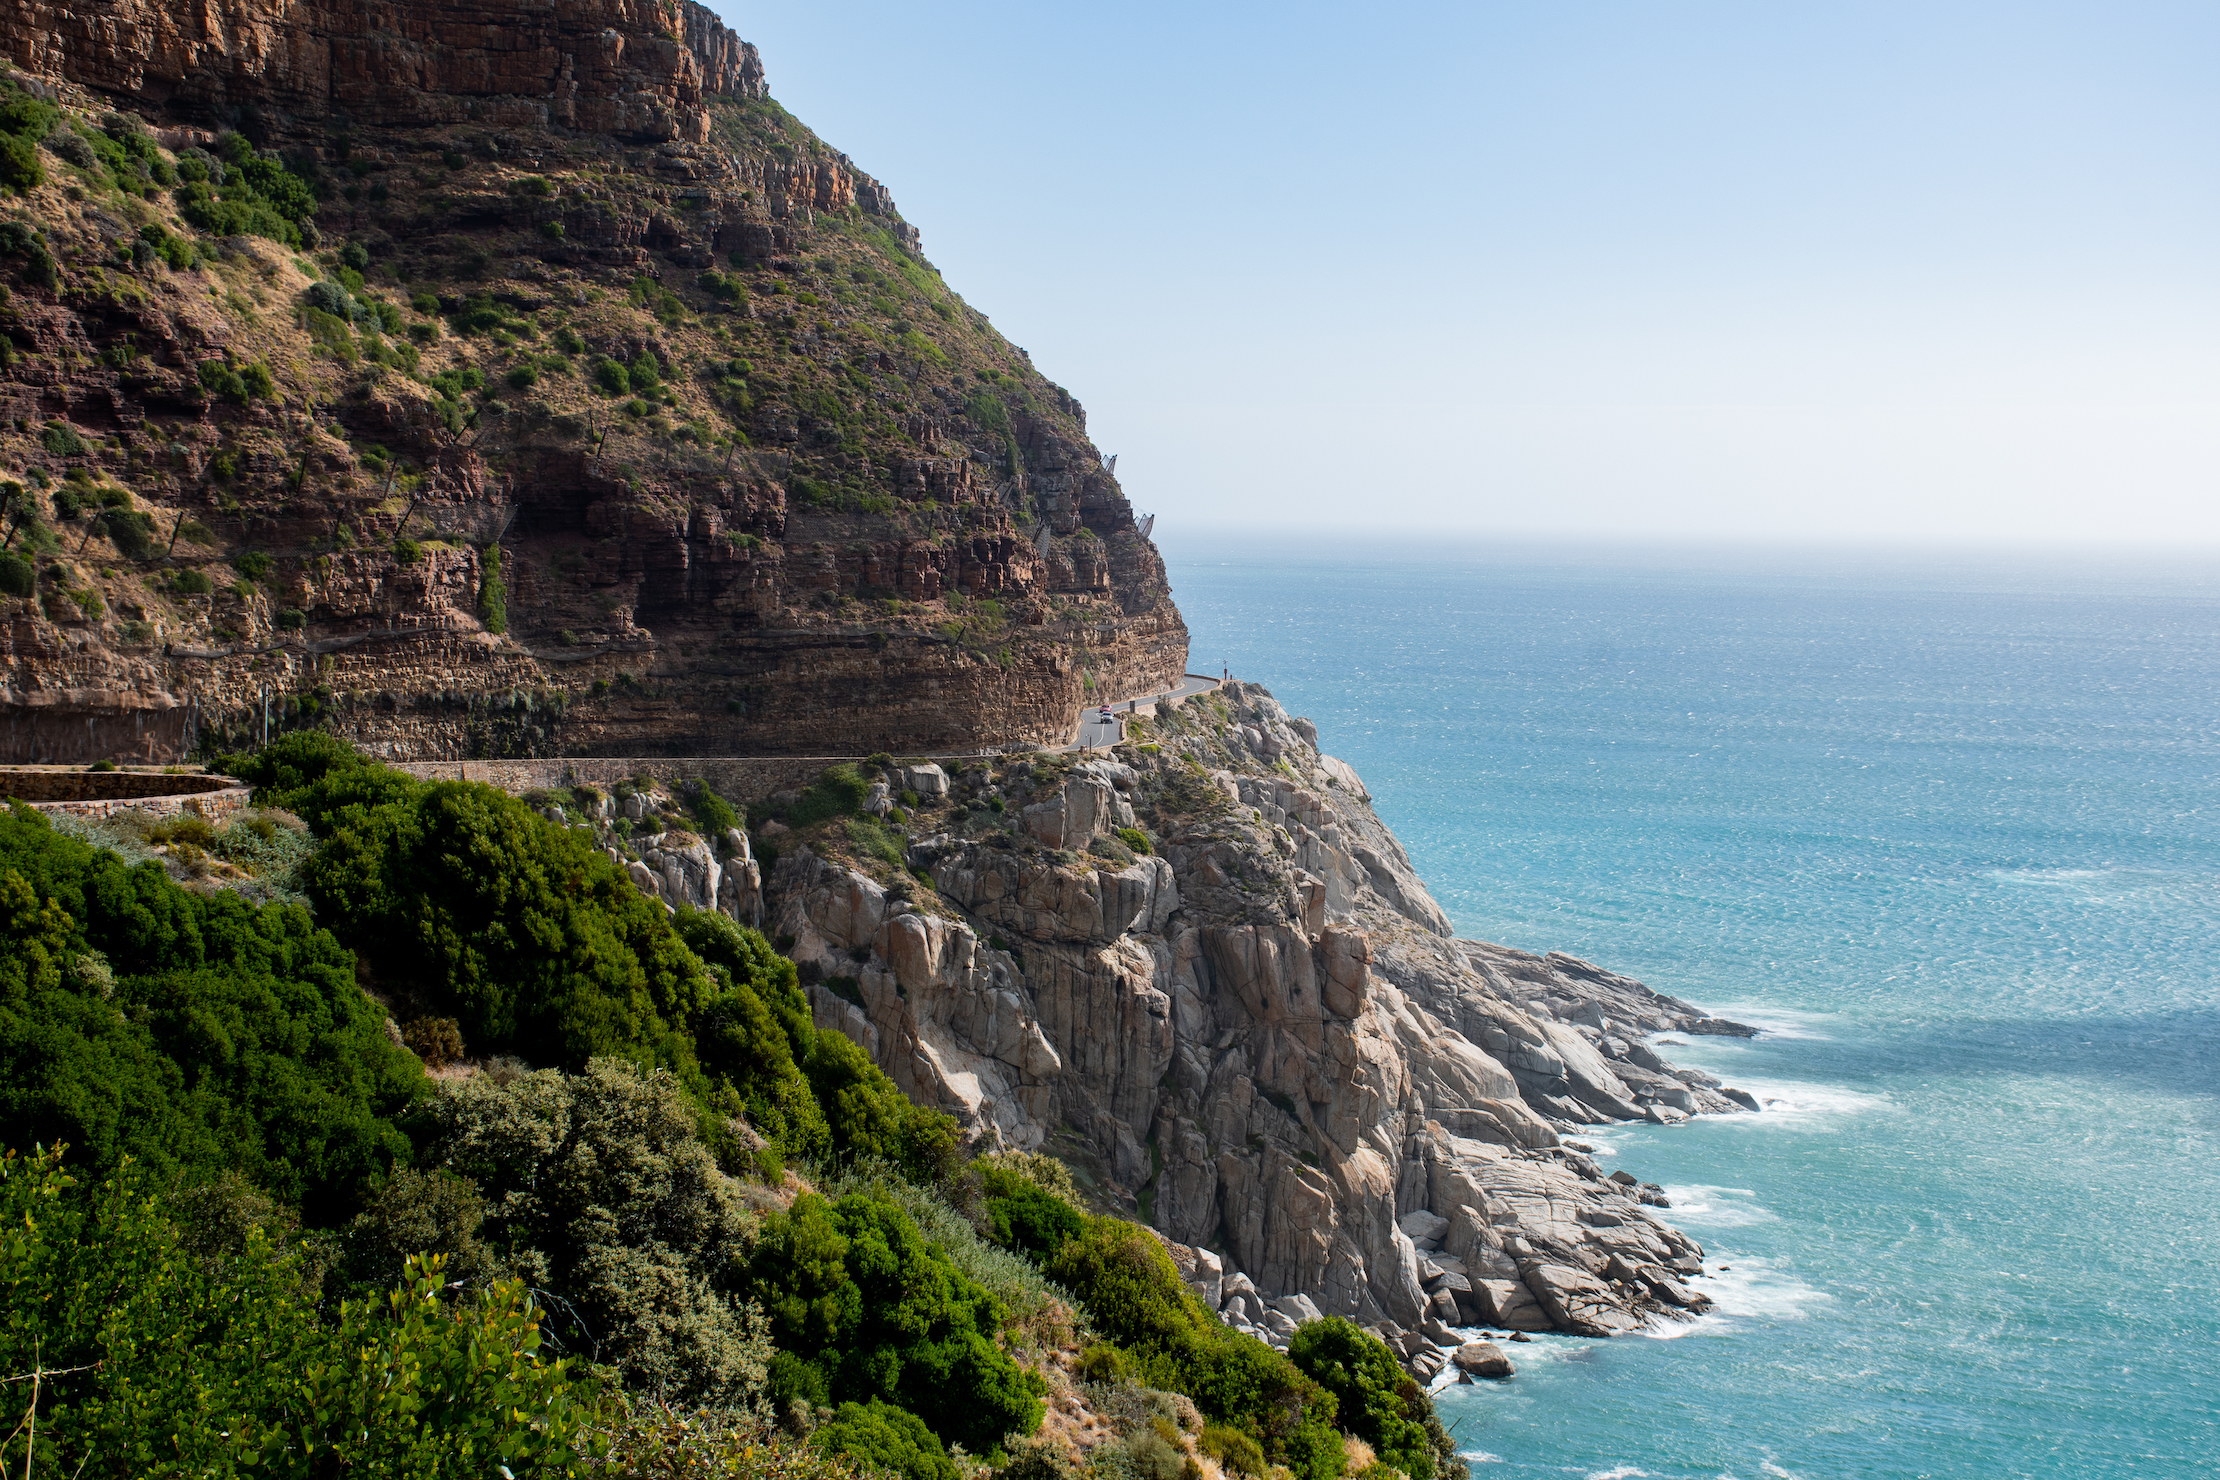 De bekende Chapman’s Peak drive Zuid-Afrika is fantastisch om te rijden